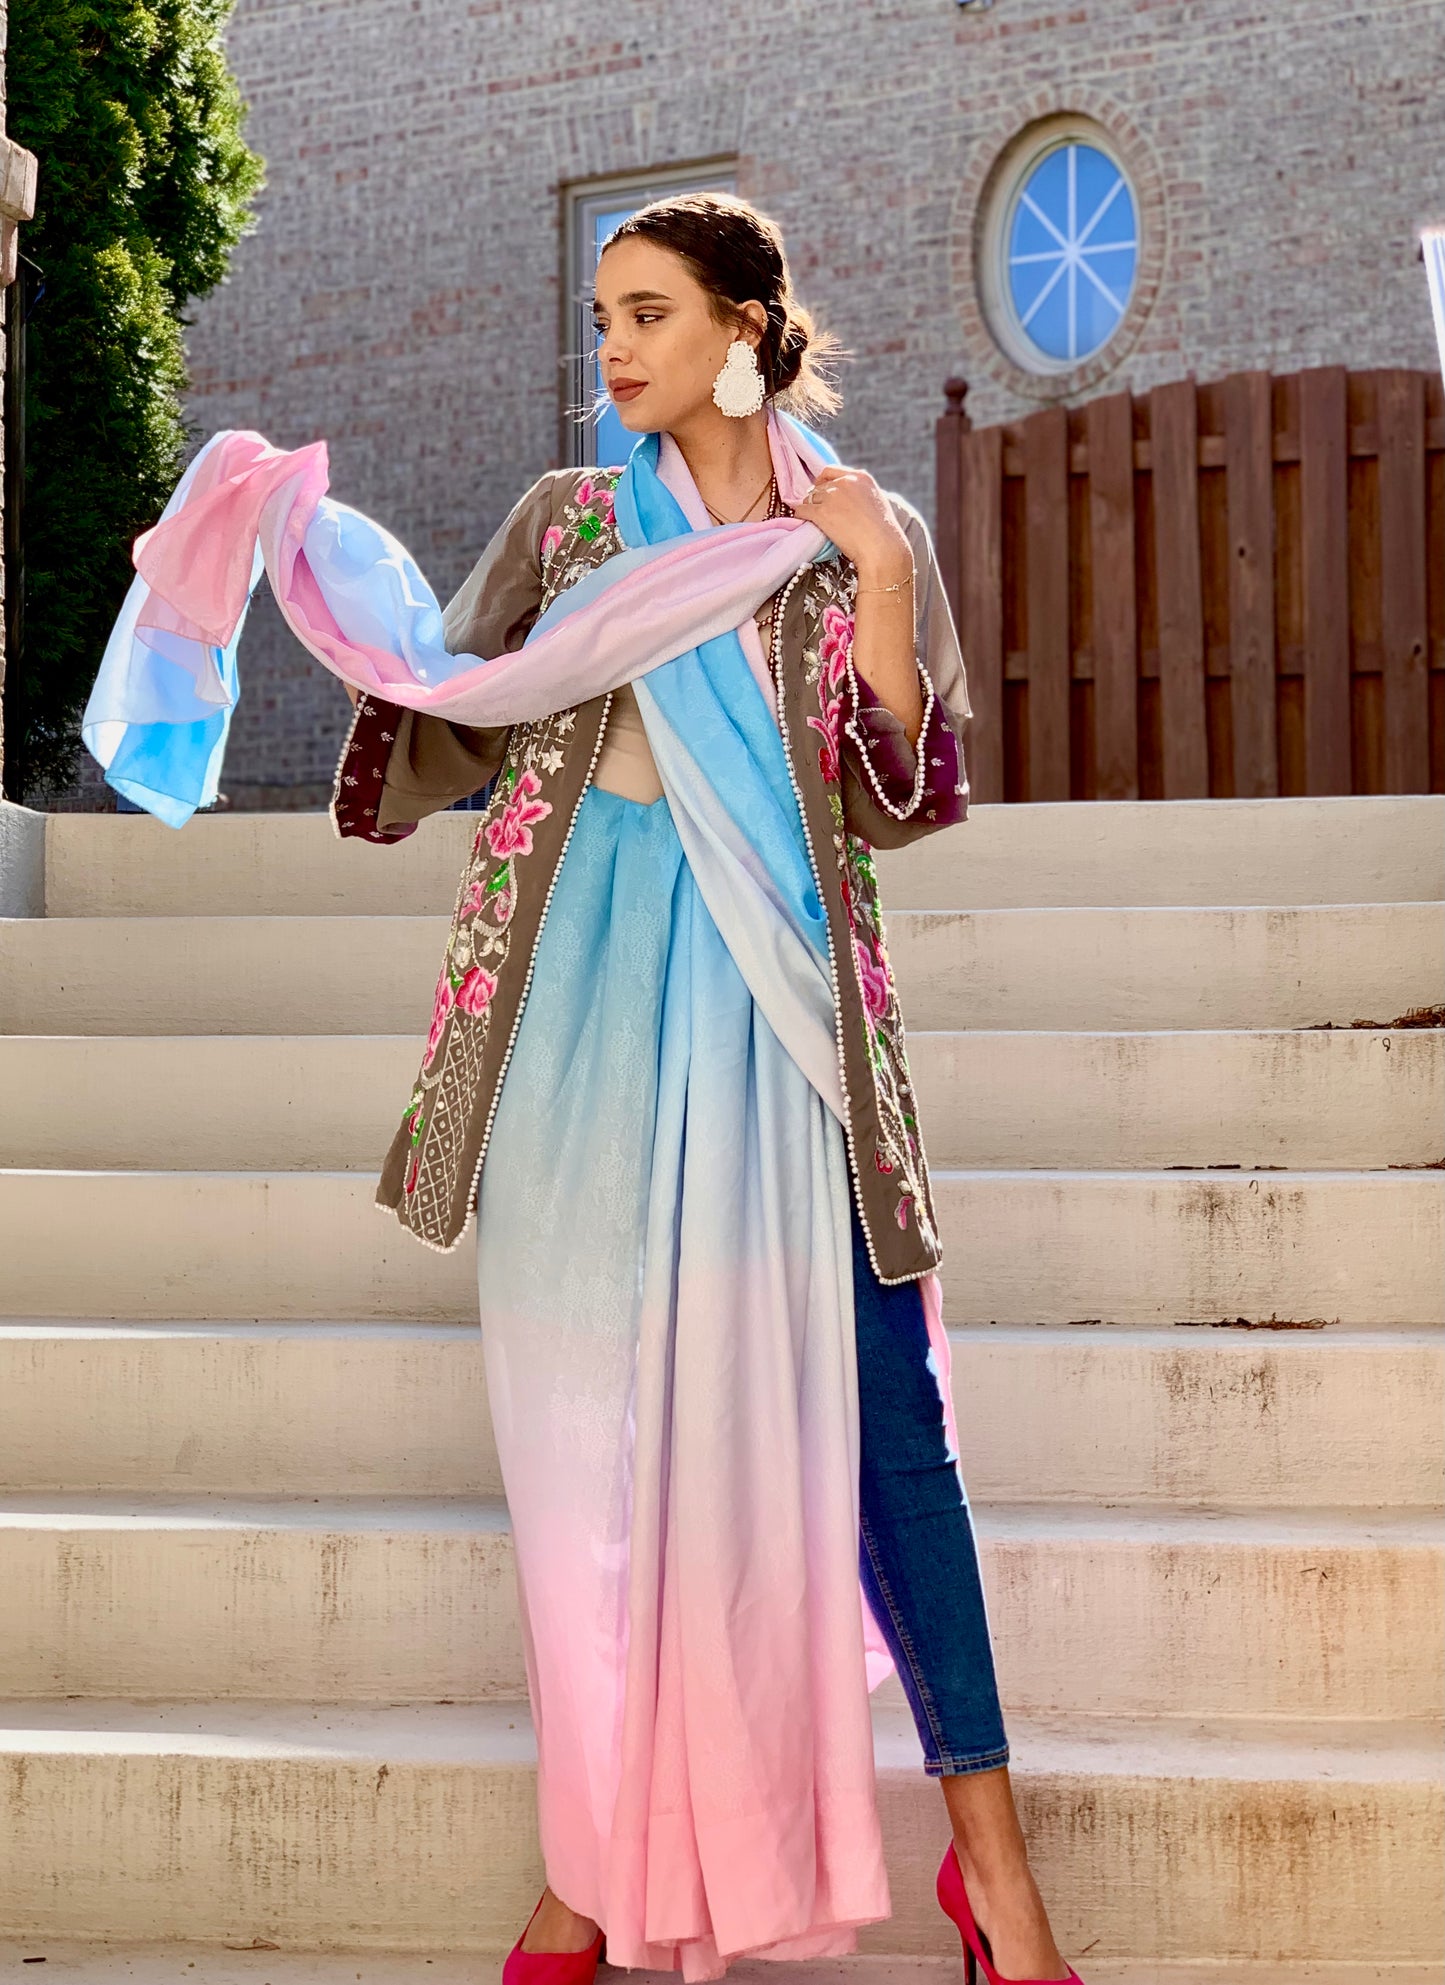 Ombré- The sari jacket mix